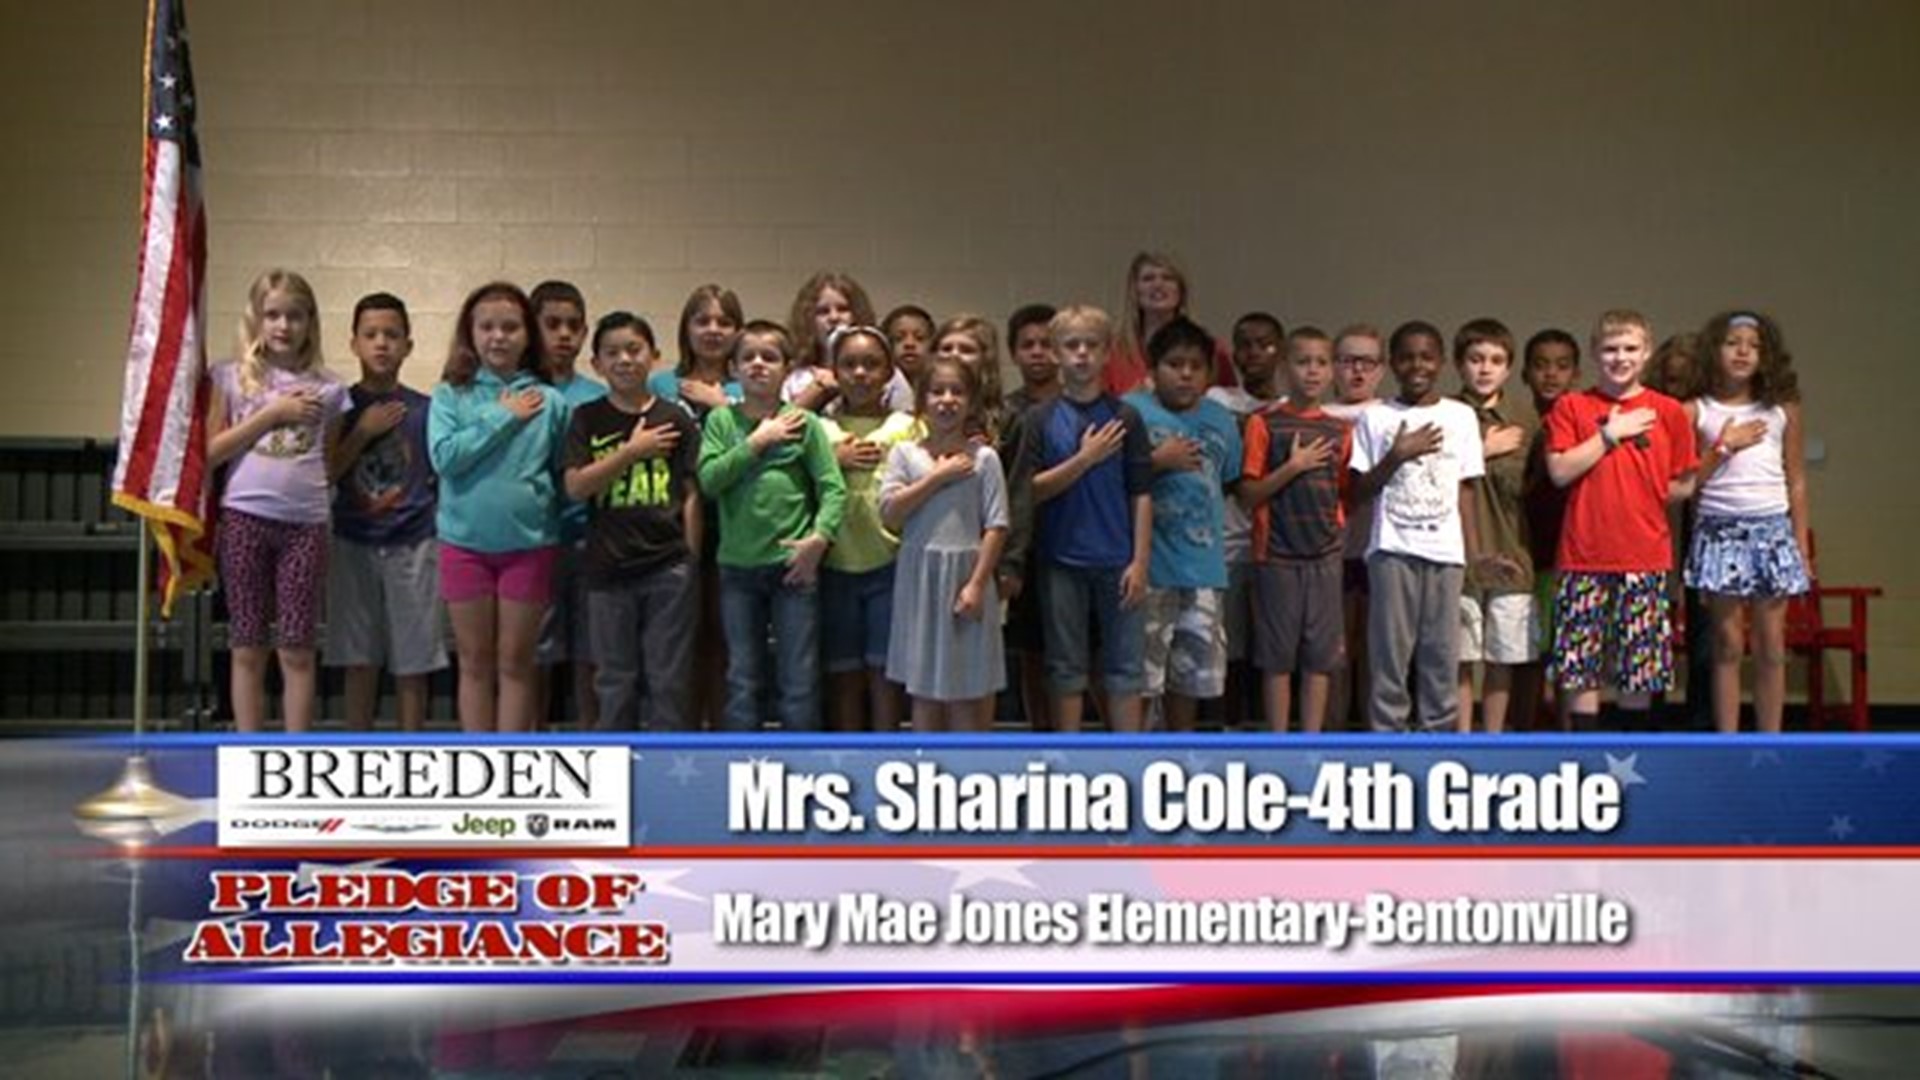 Mary Mae Jones Elementary - Bentonville - Mrs. Sharina Cole - 4th Grade